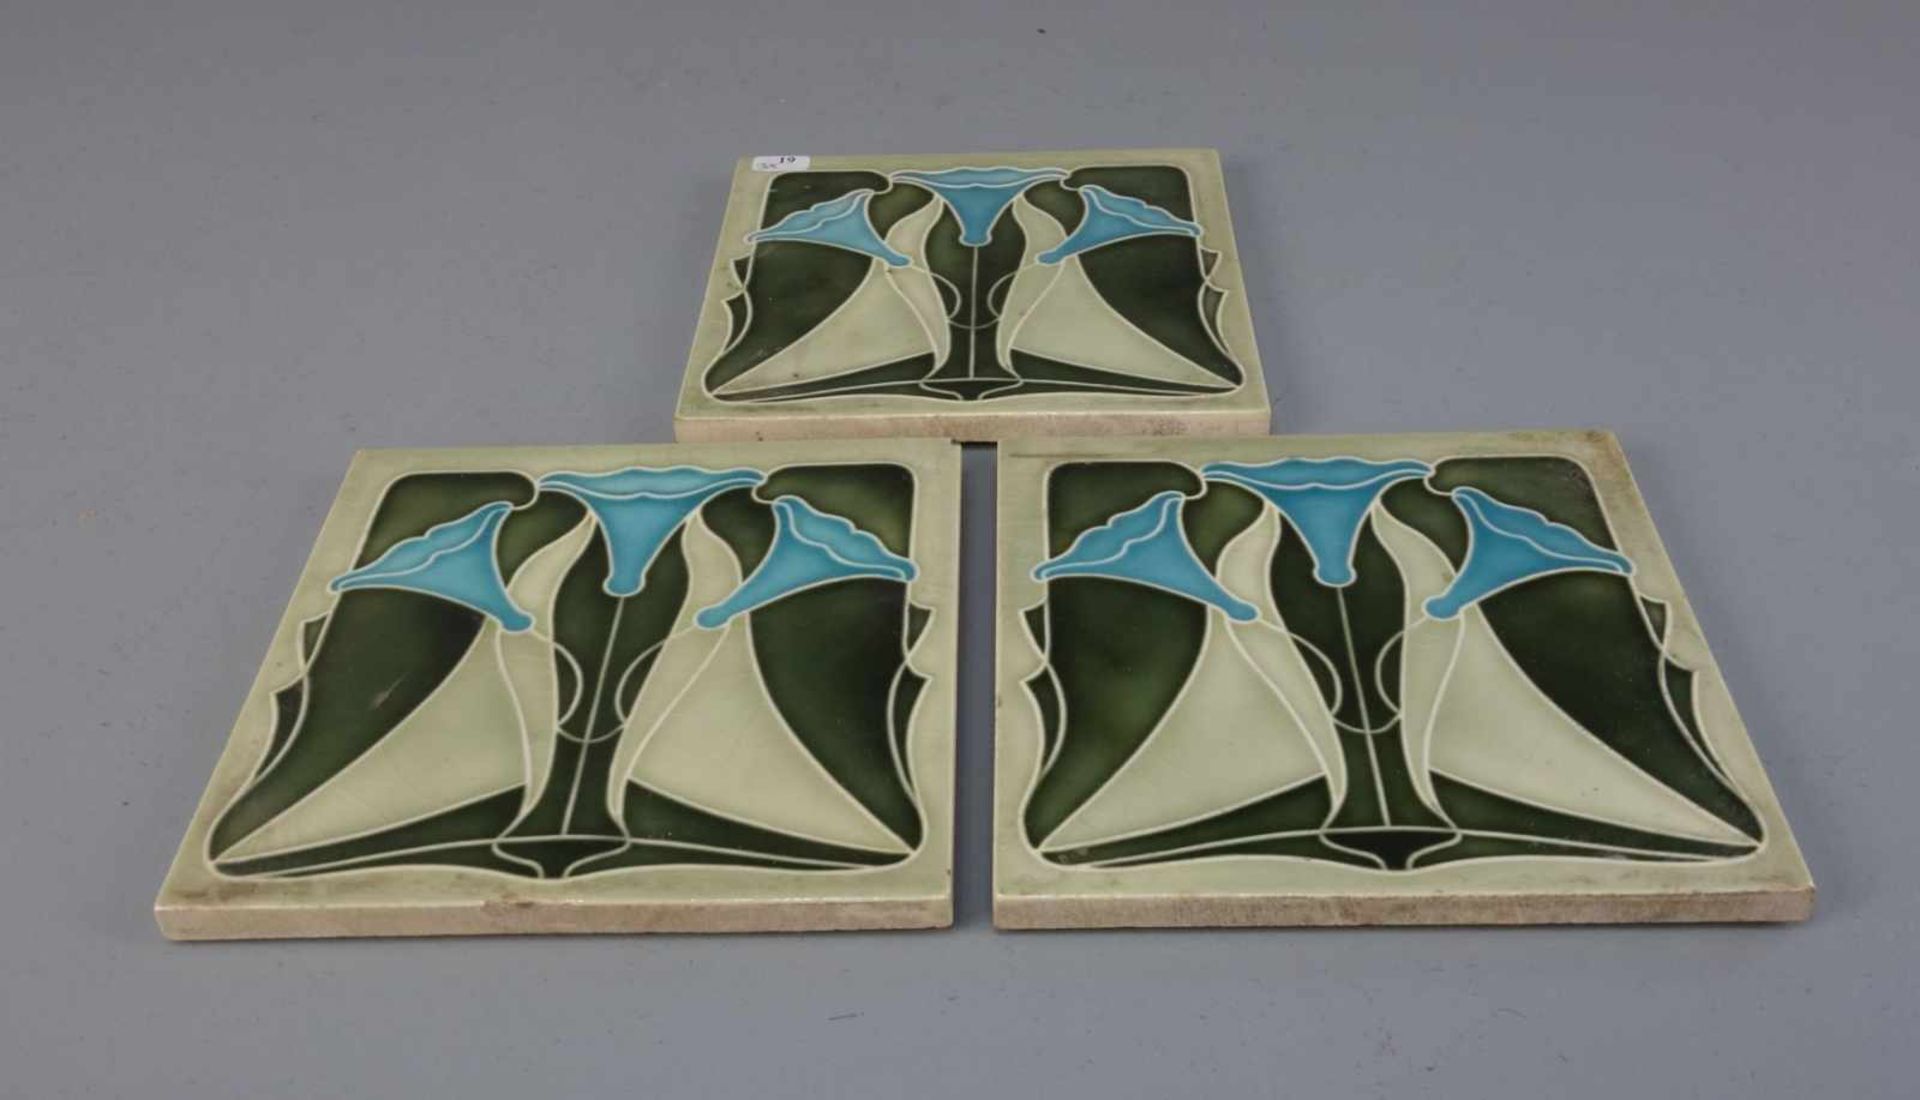 3 JUGENDSTILFLIESEN / art nouveau tiles, heller Scherben, um 1900, dreifarbig glasiert mit - Image 2 of 7